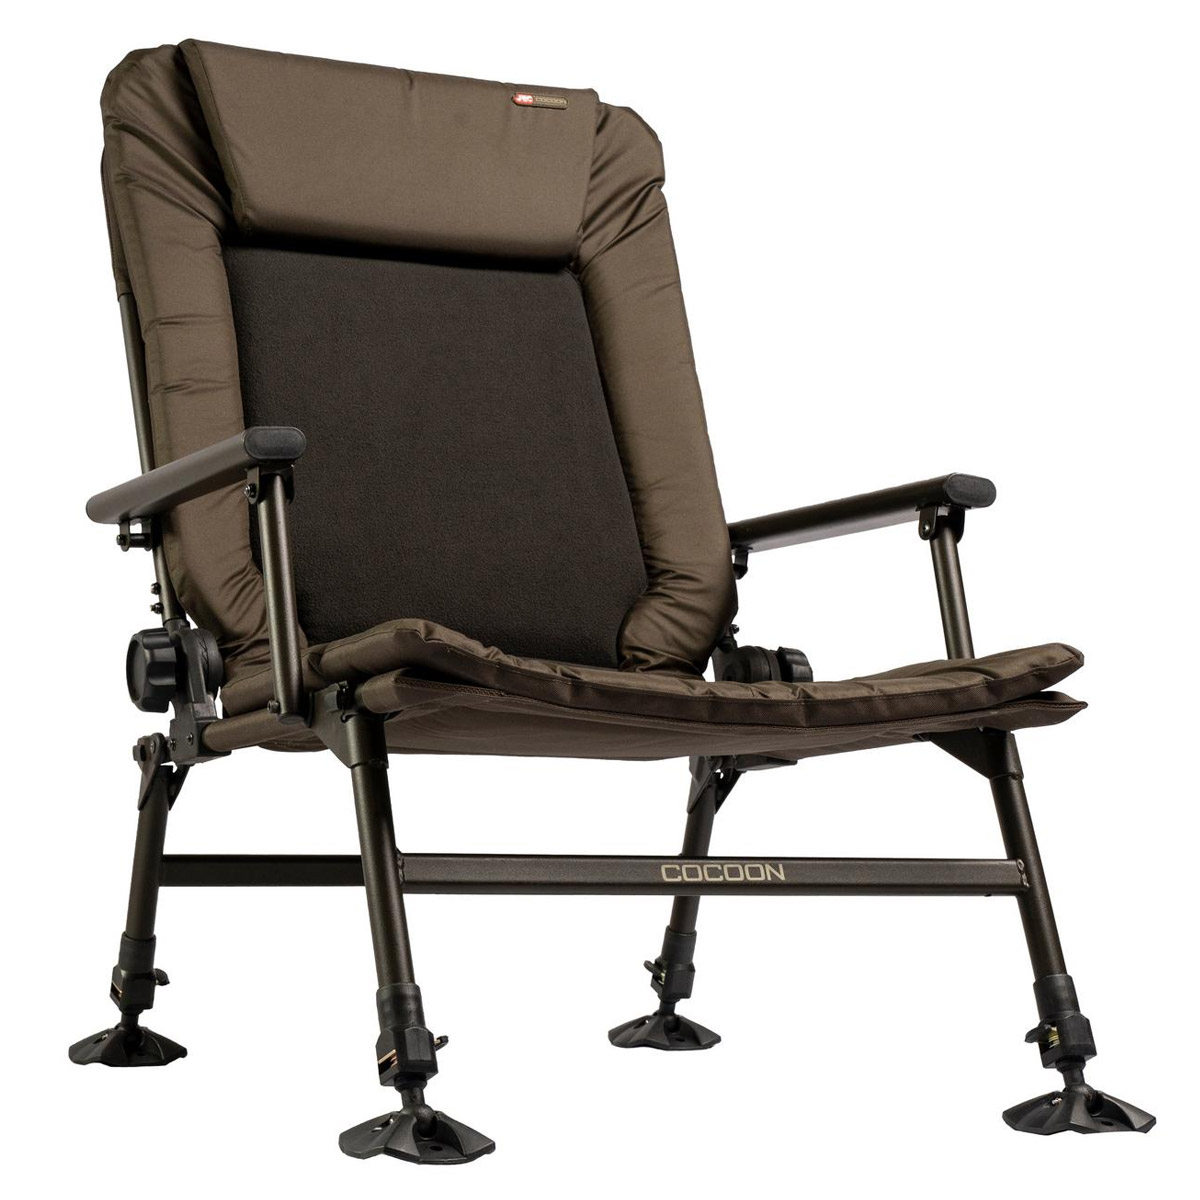 JRC Cocoon II Relaxa Recliner Chair